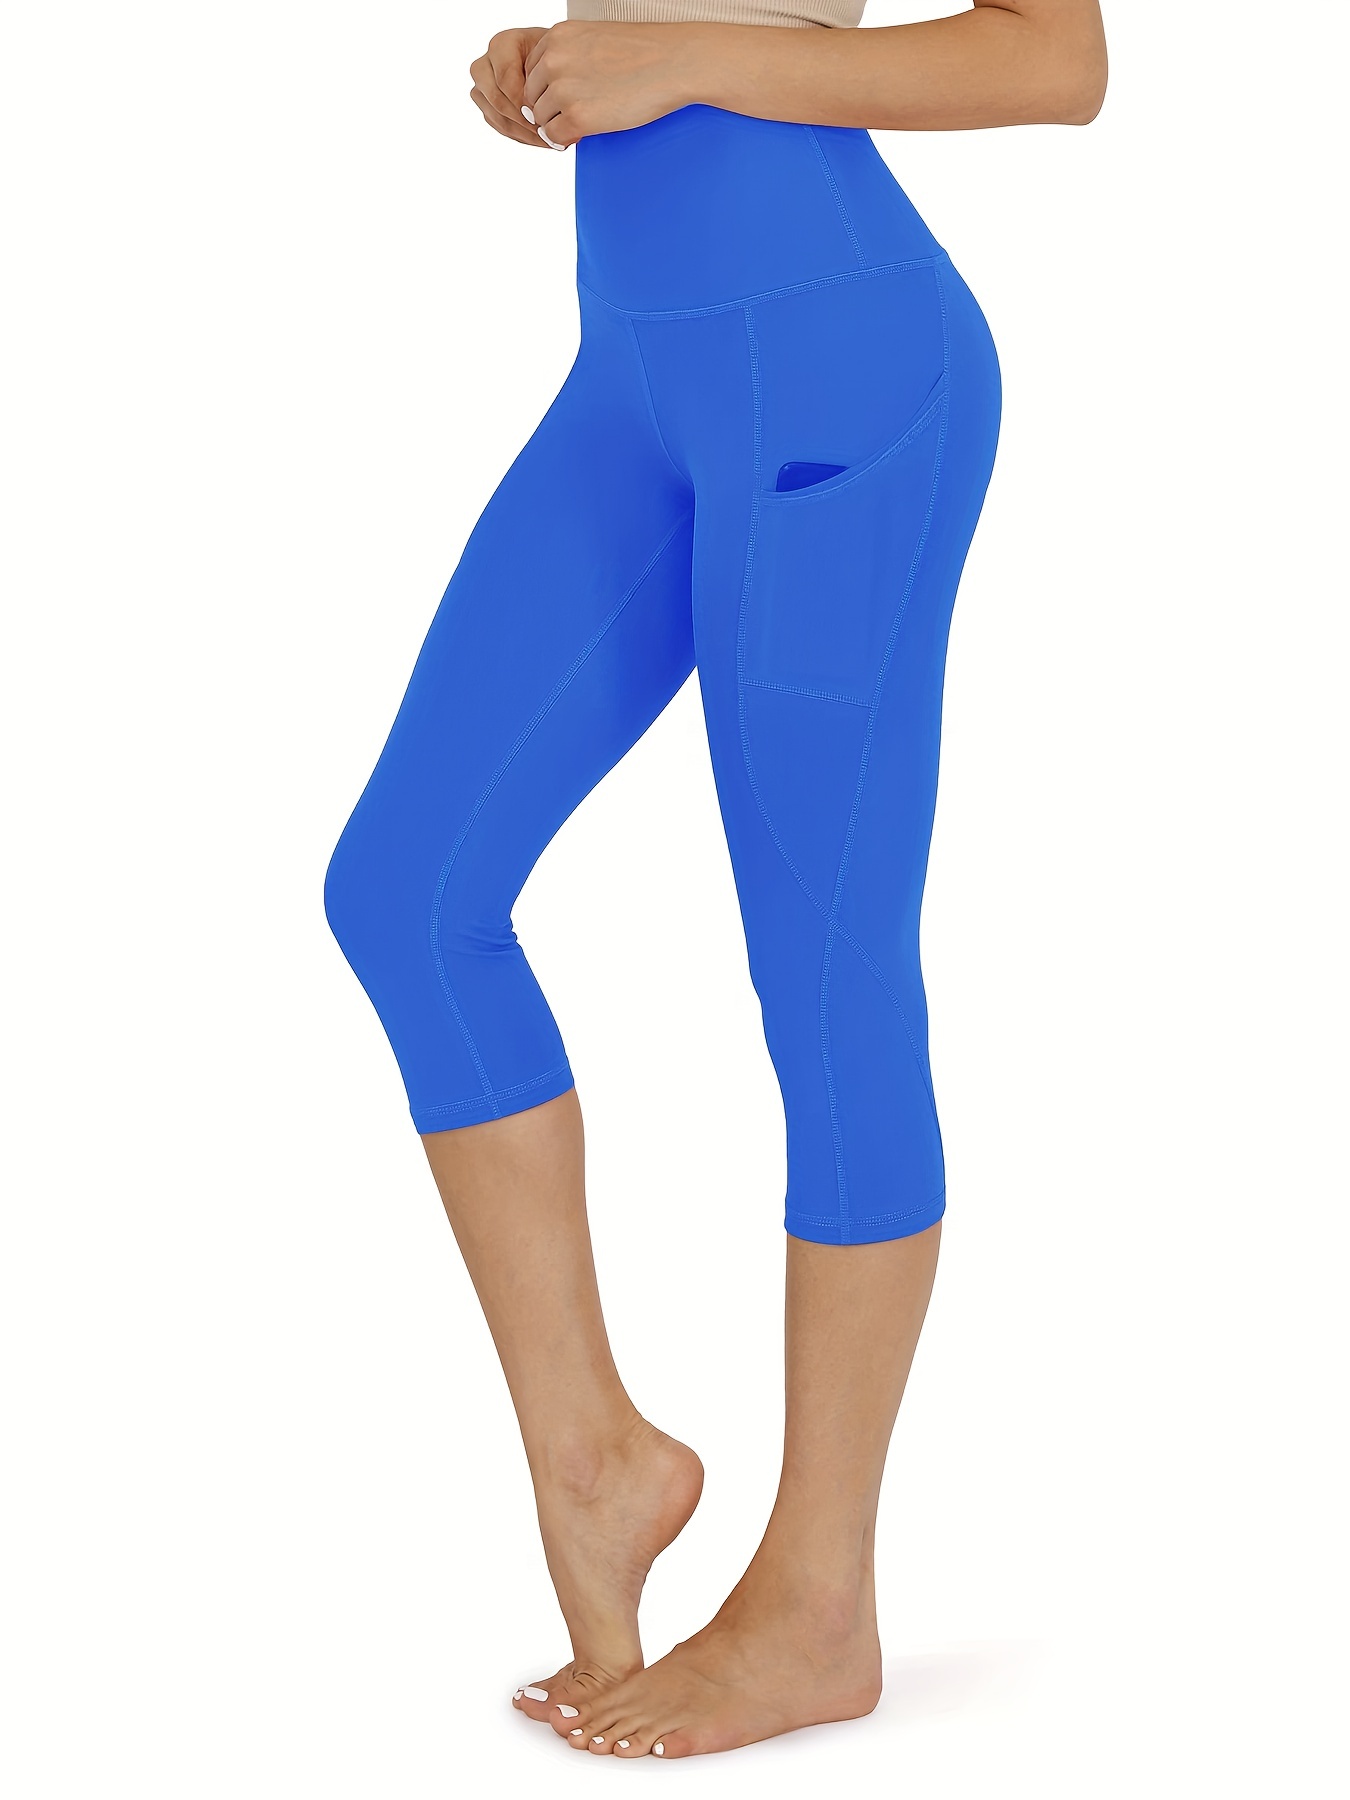 leggings with pockets for women capri light blue : CRZ YOGA High Waisted  Capri Workout Leggin